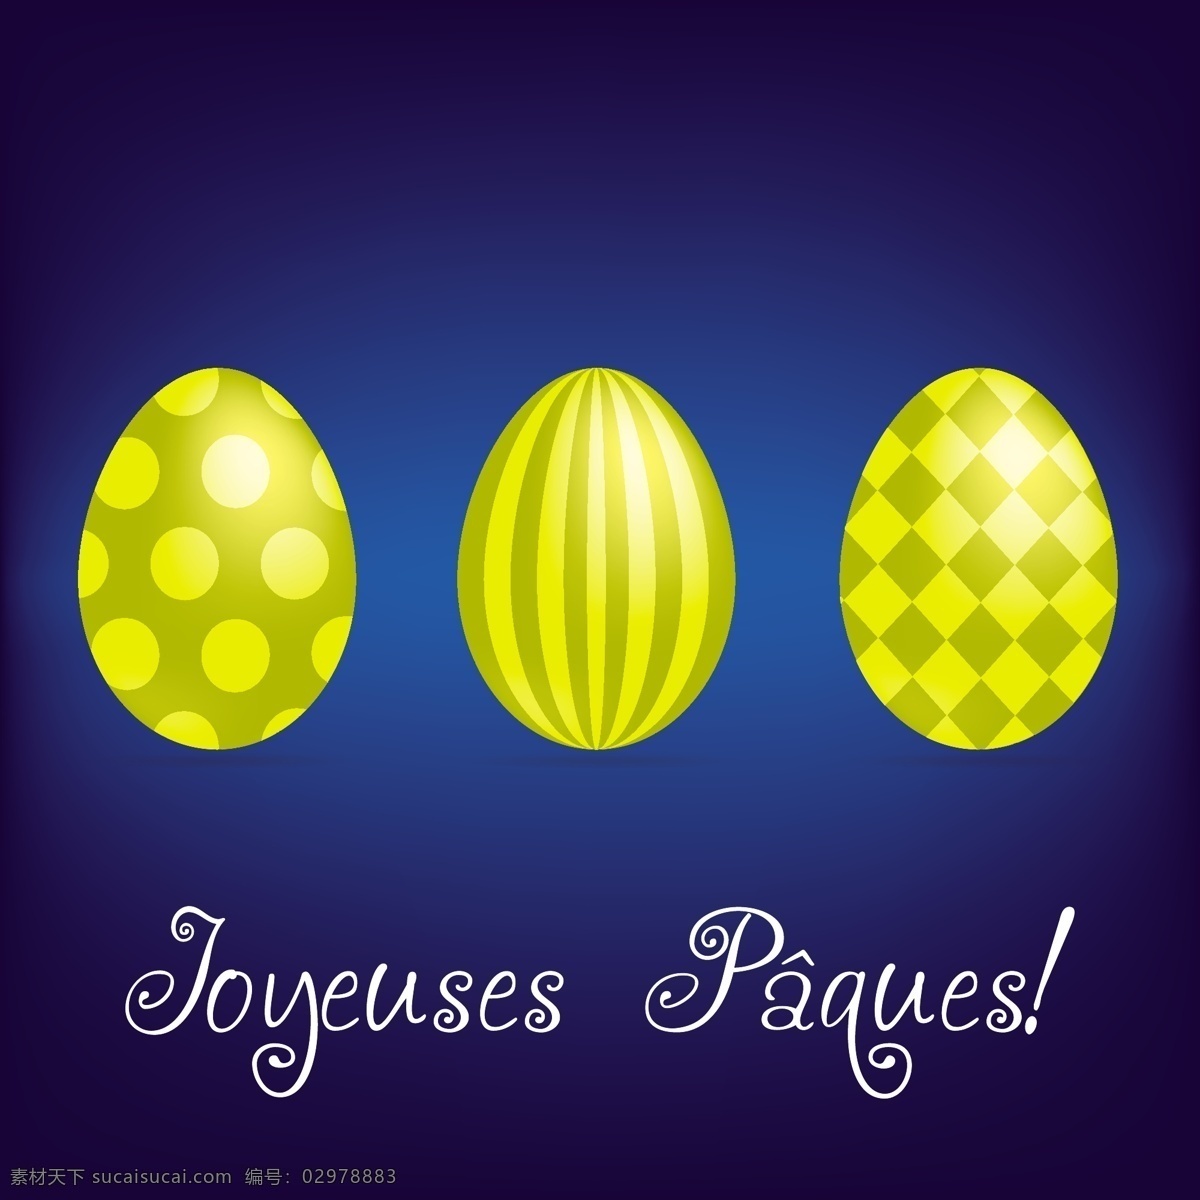 法国 复活节 快乐 鲜 鸡蛋 卡 矢量 格式 矢量图 日常生活